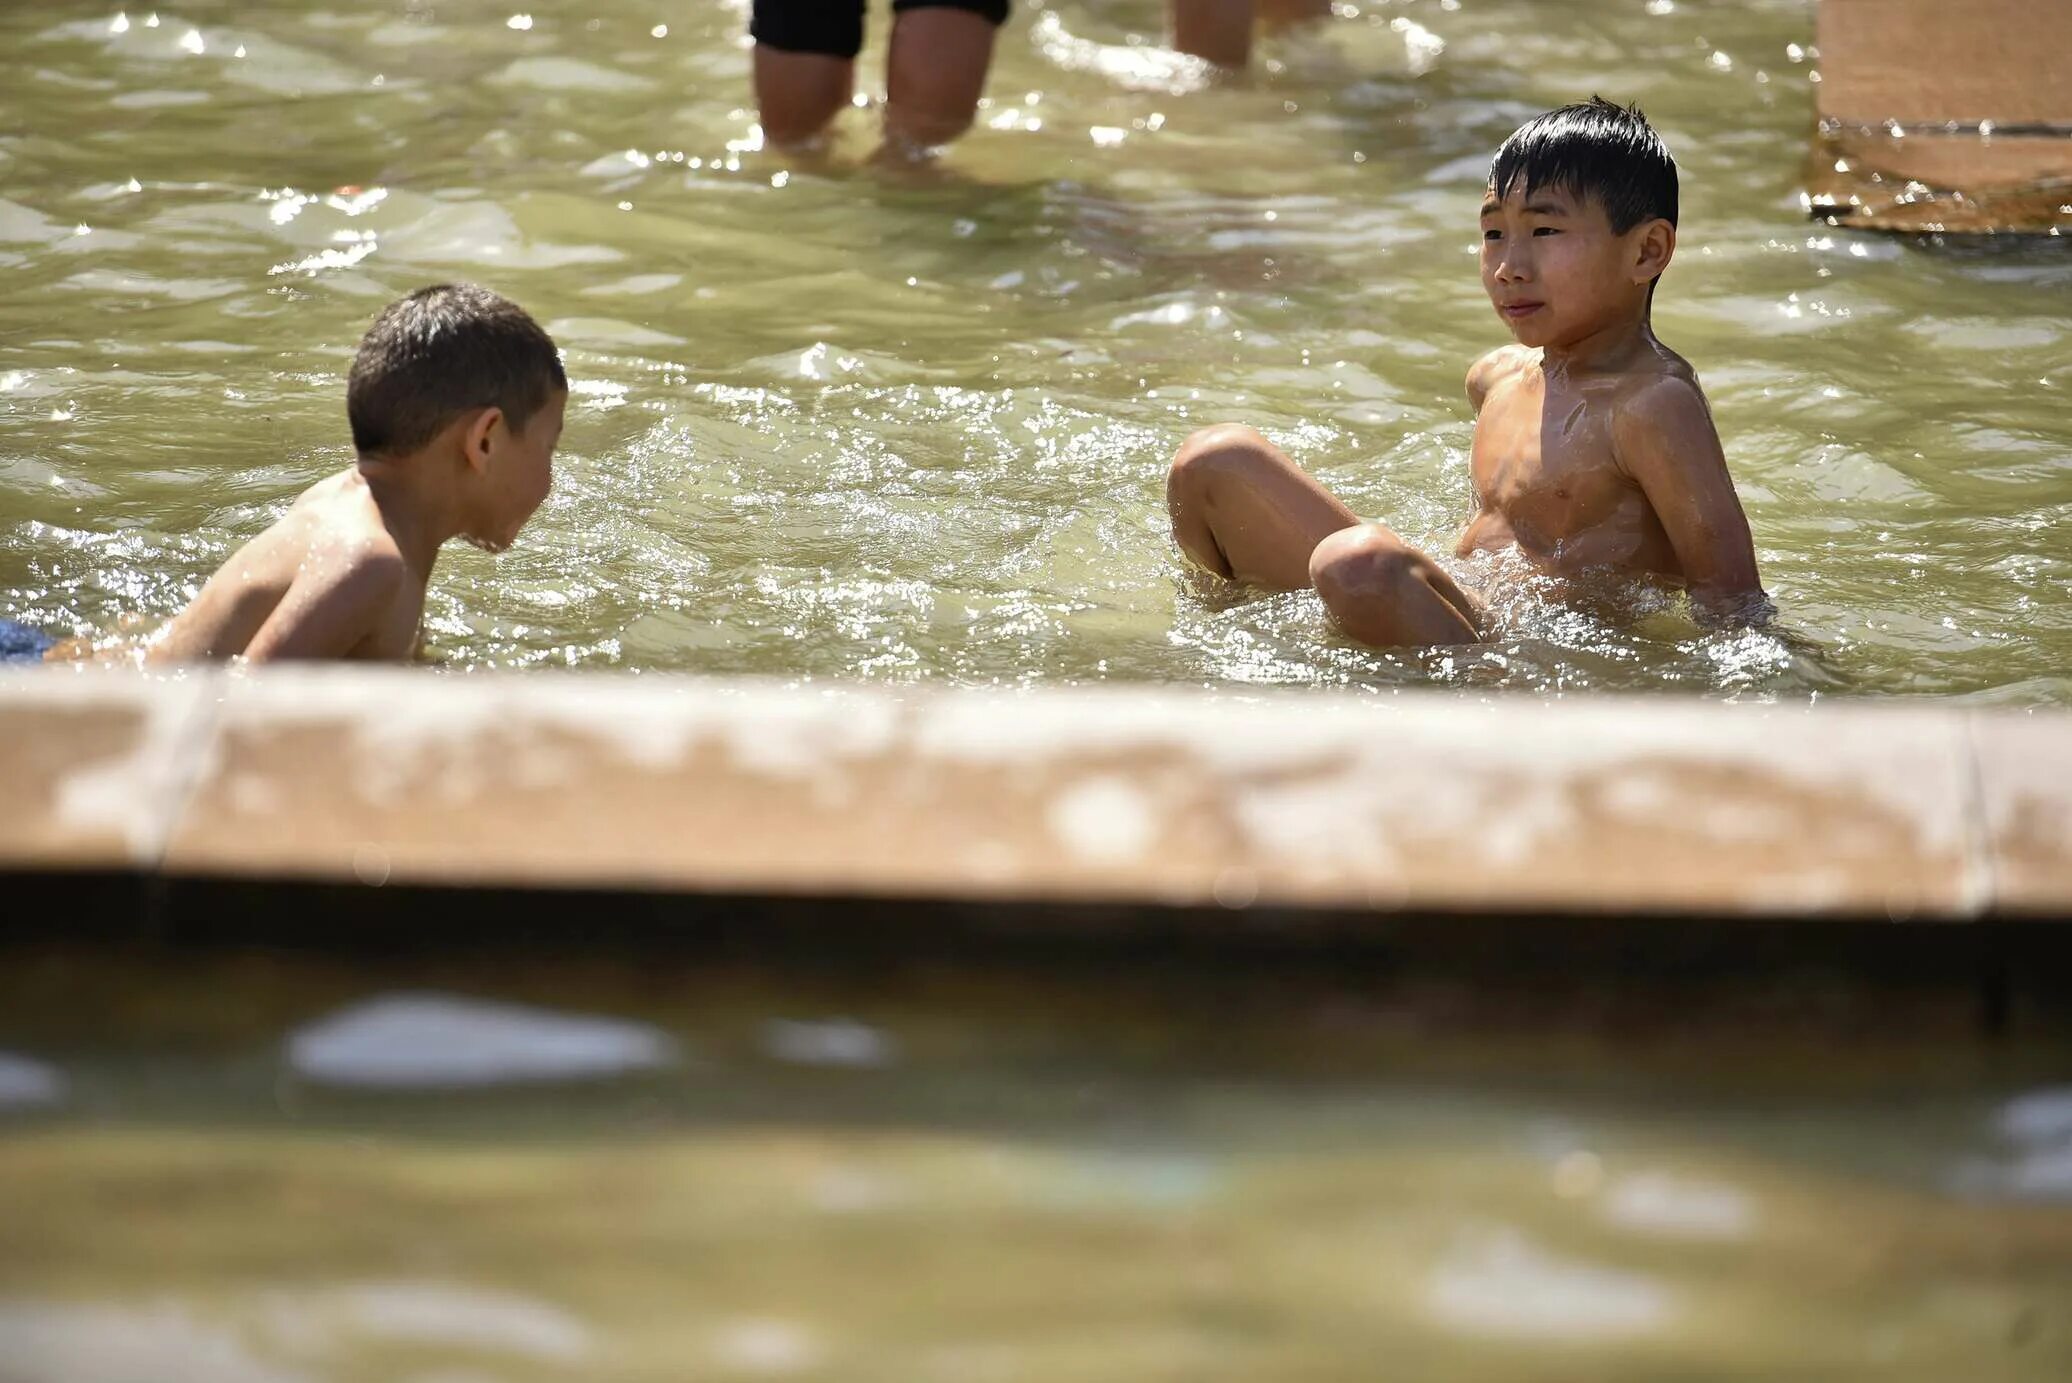 Мальчики купаются вместе. Мальчишки на реке. Мальчишки на речке. Дети купаются в море.